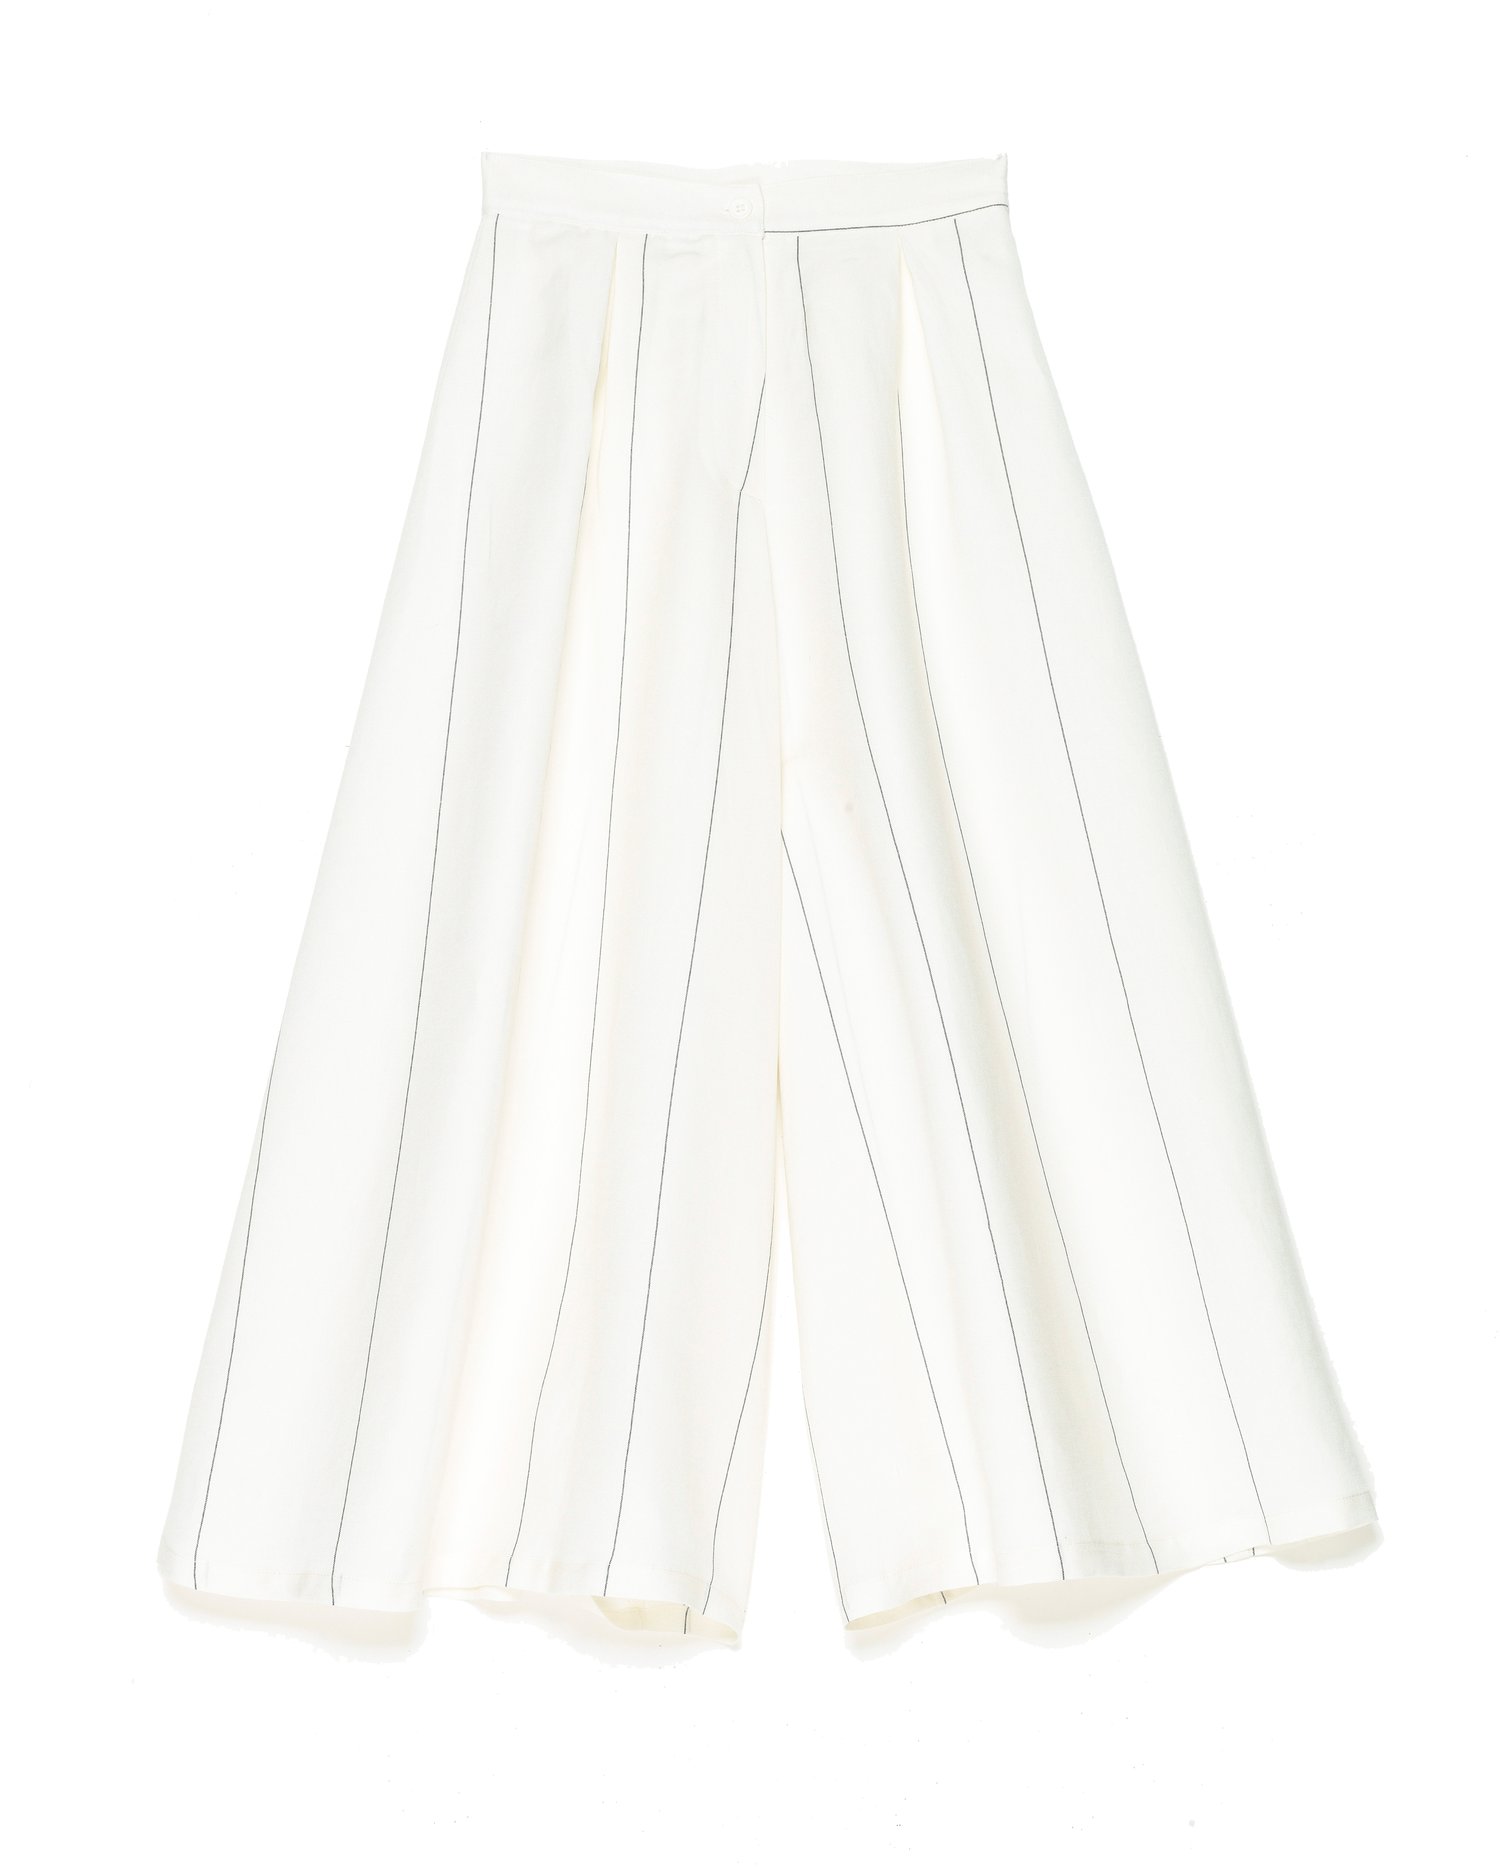 Image of Jupe culotte rayée SOPHIA 129€ -60%